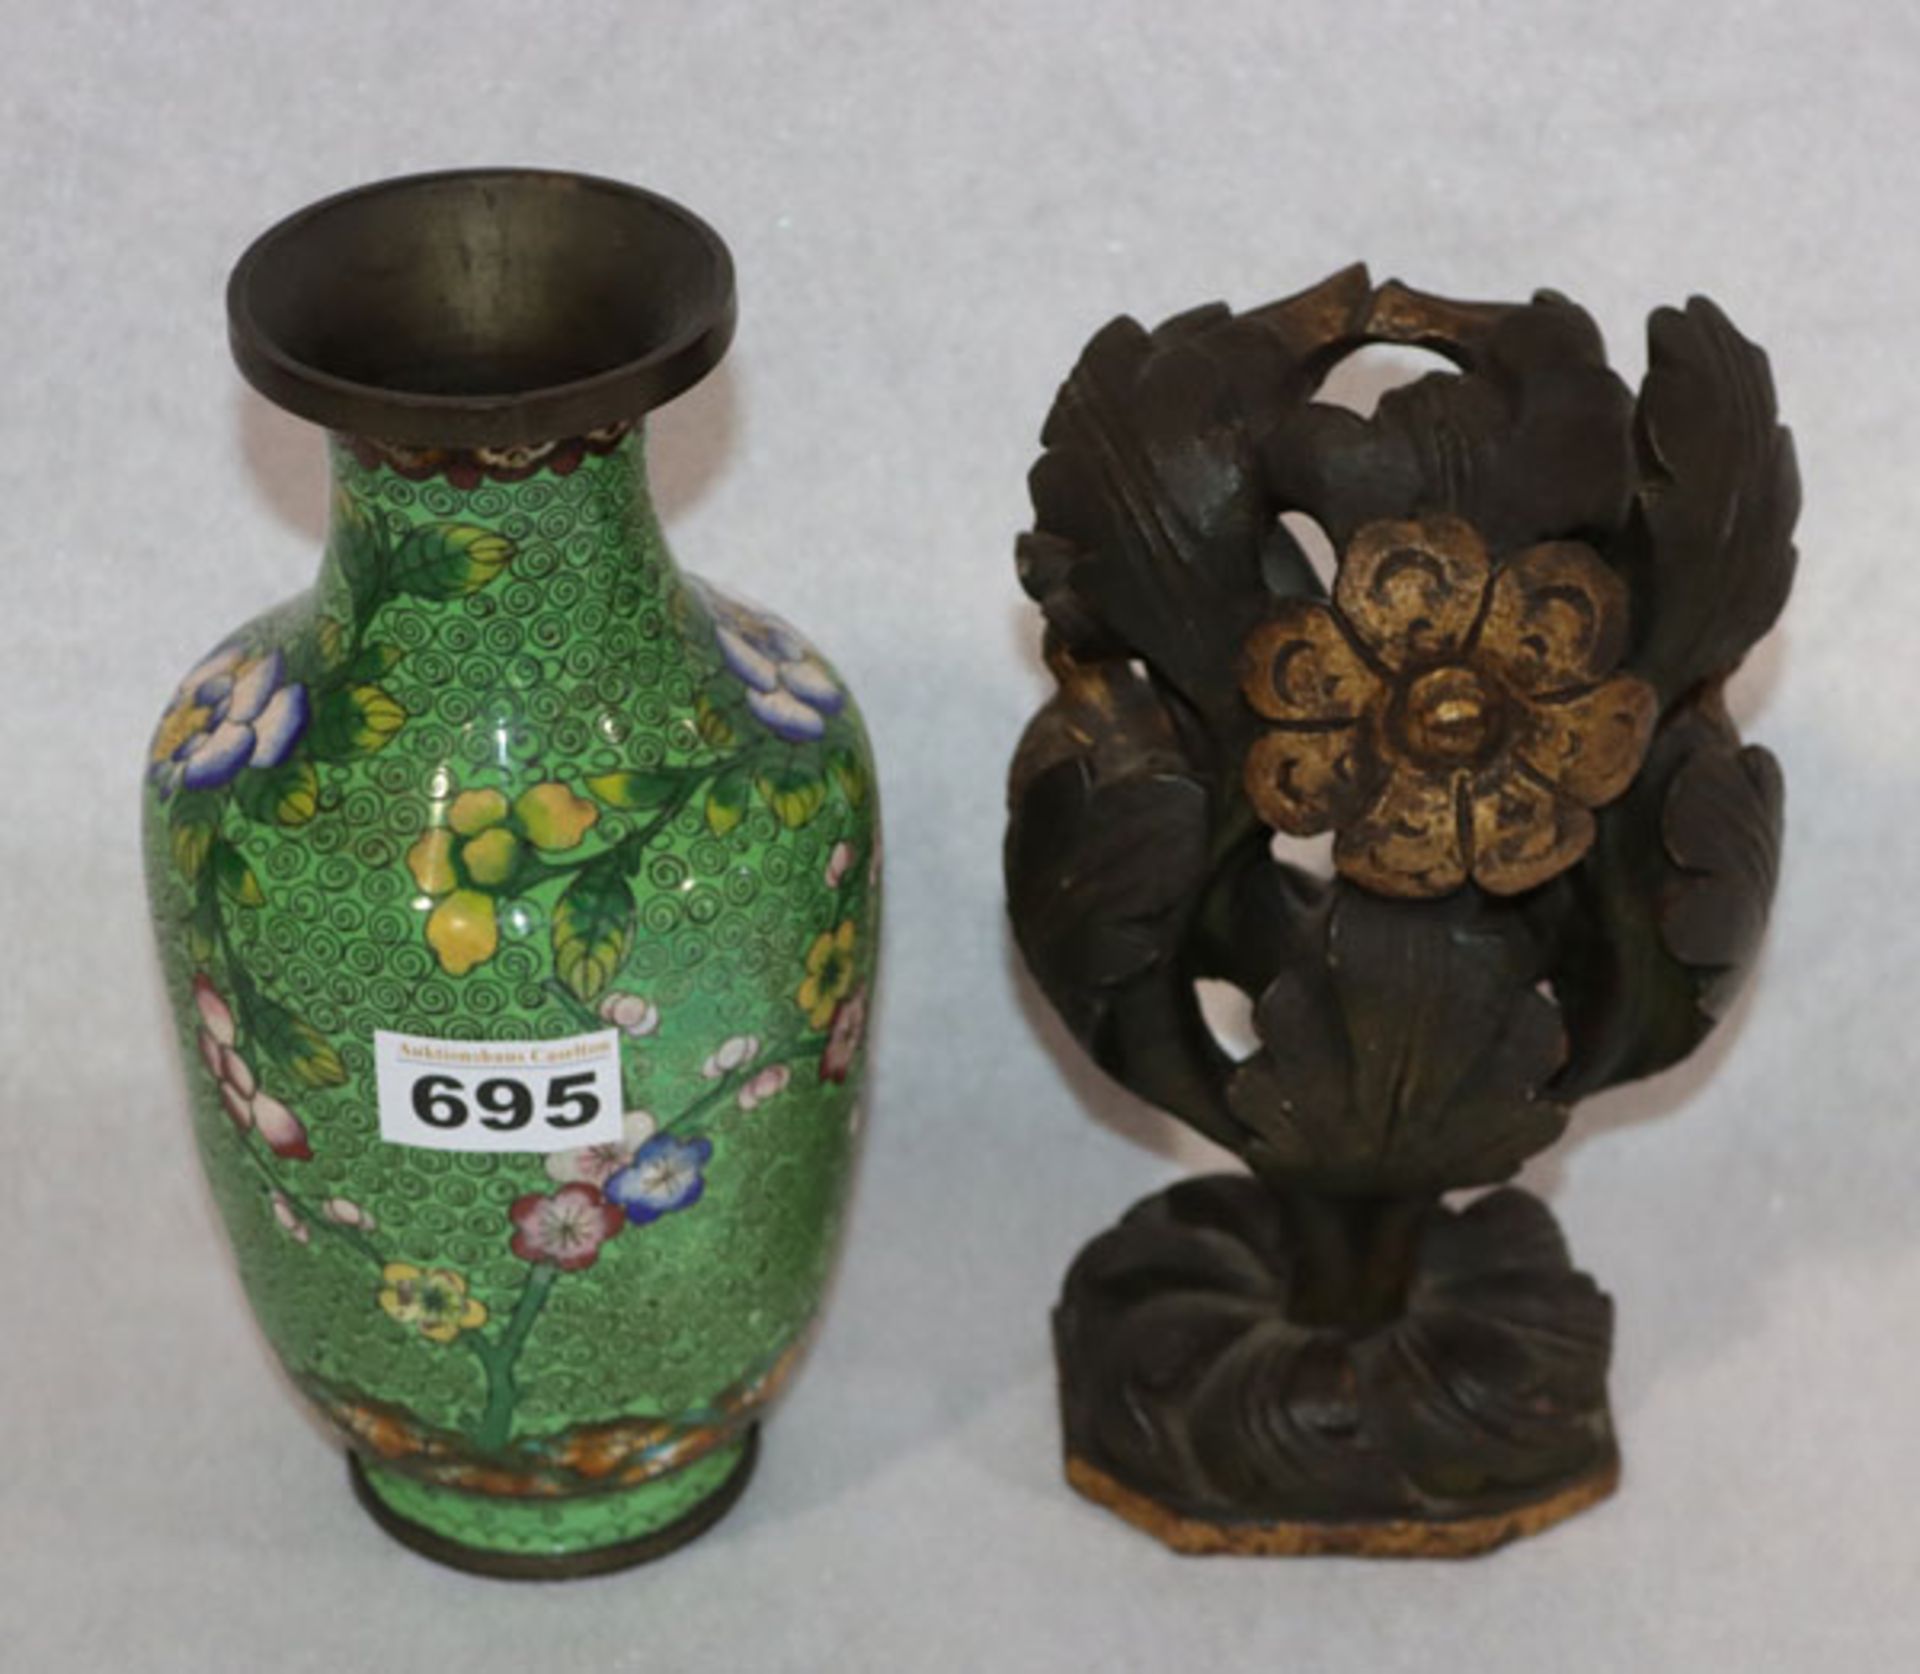 Cloisonné Vase, grün mit buntem Blumendekor, H 23,5 cm, und Skulptur 'Baum mit Vögel', braun/gold